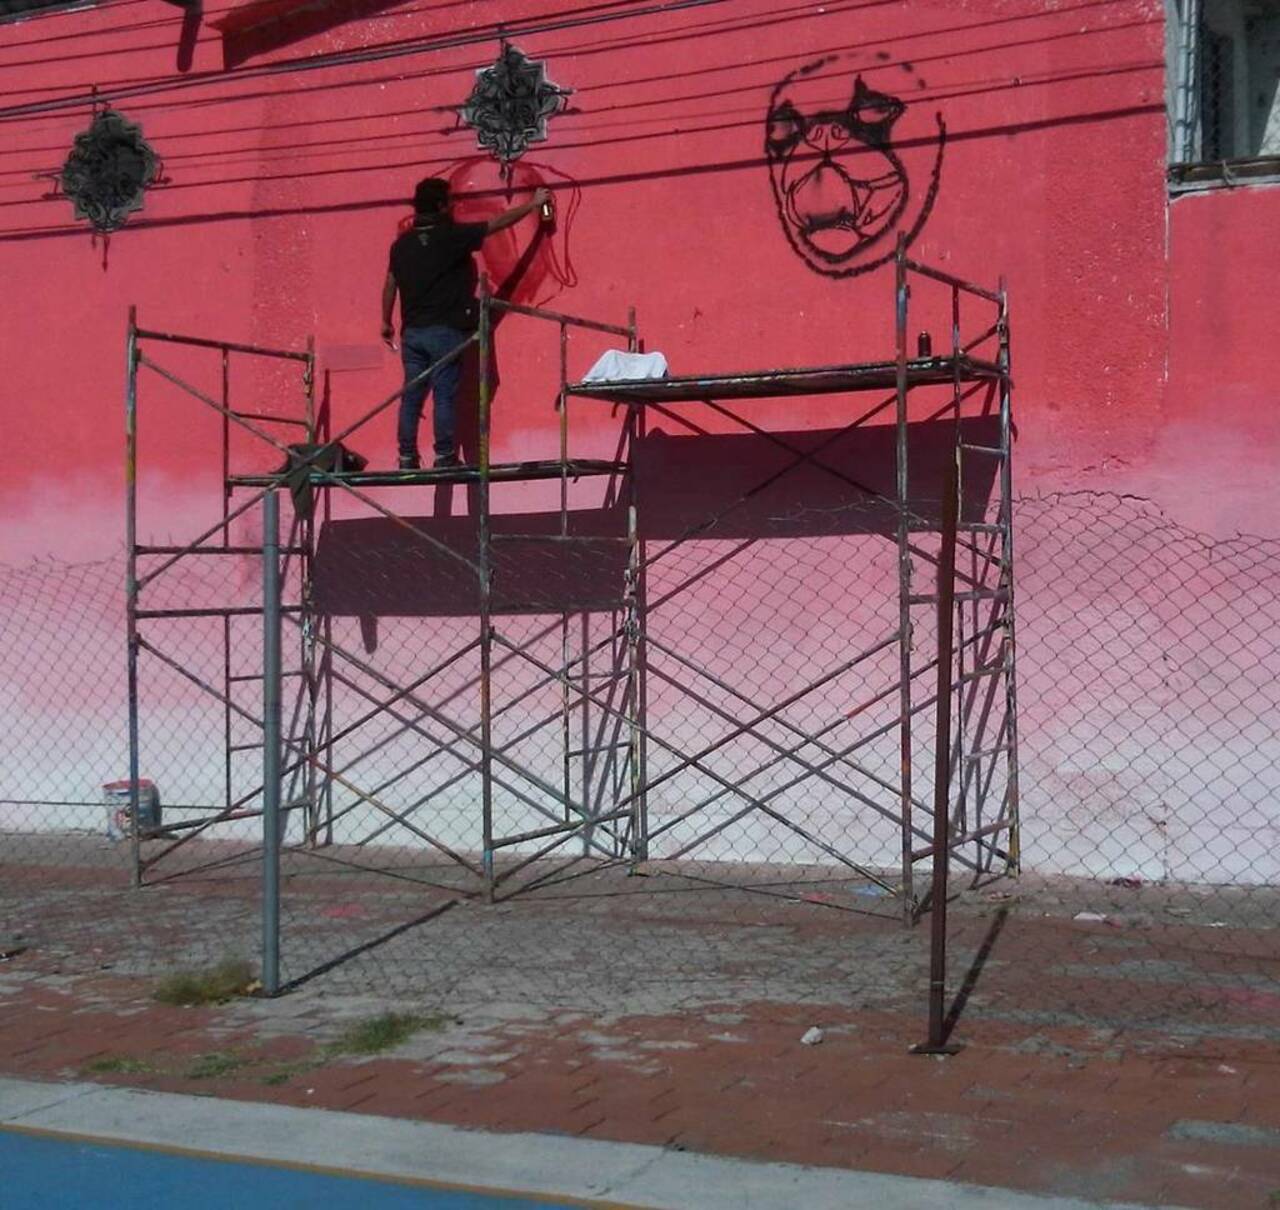 #Tiempodeperros #graffiti #arteurbano #streetart #artepublico #streetartmexico #streetarteverywhere #procesos #nuev… https://t.co/QLfwrvCn2t